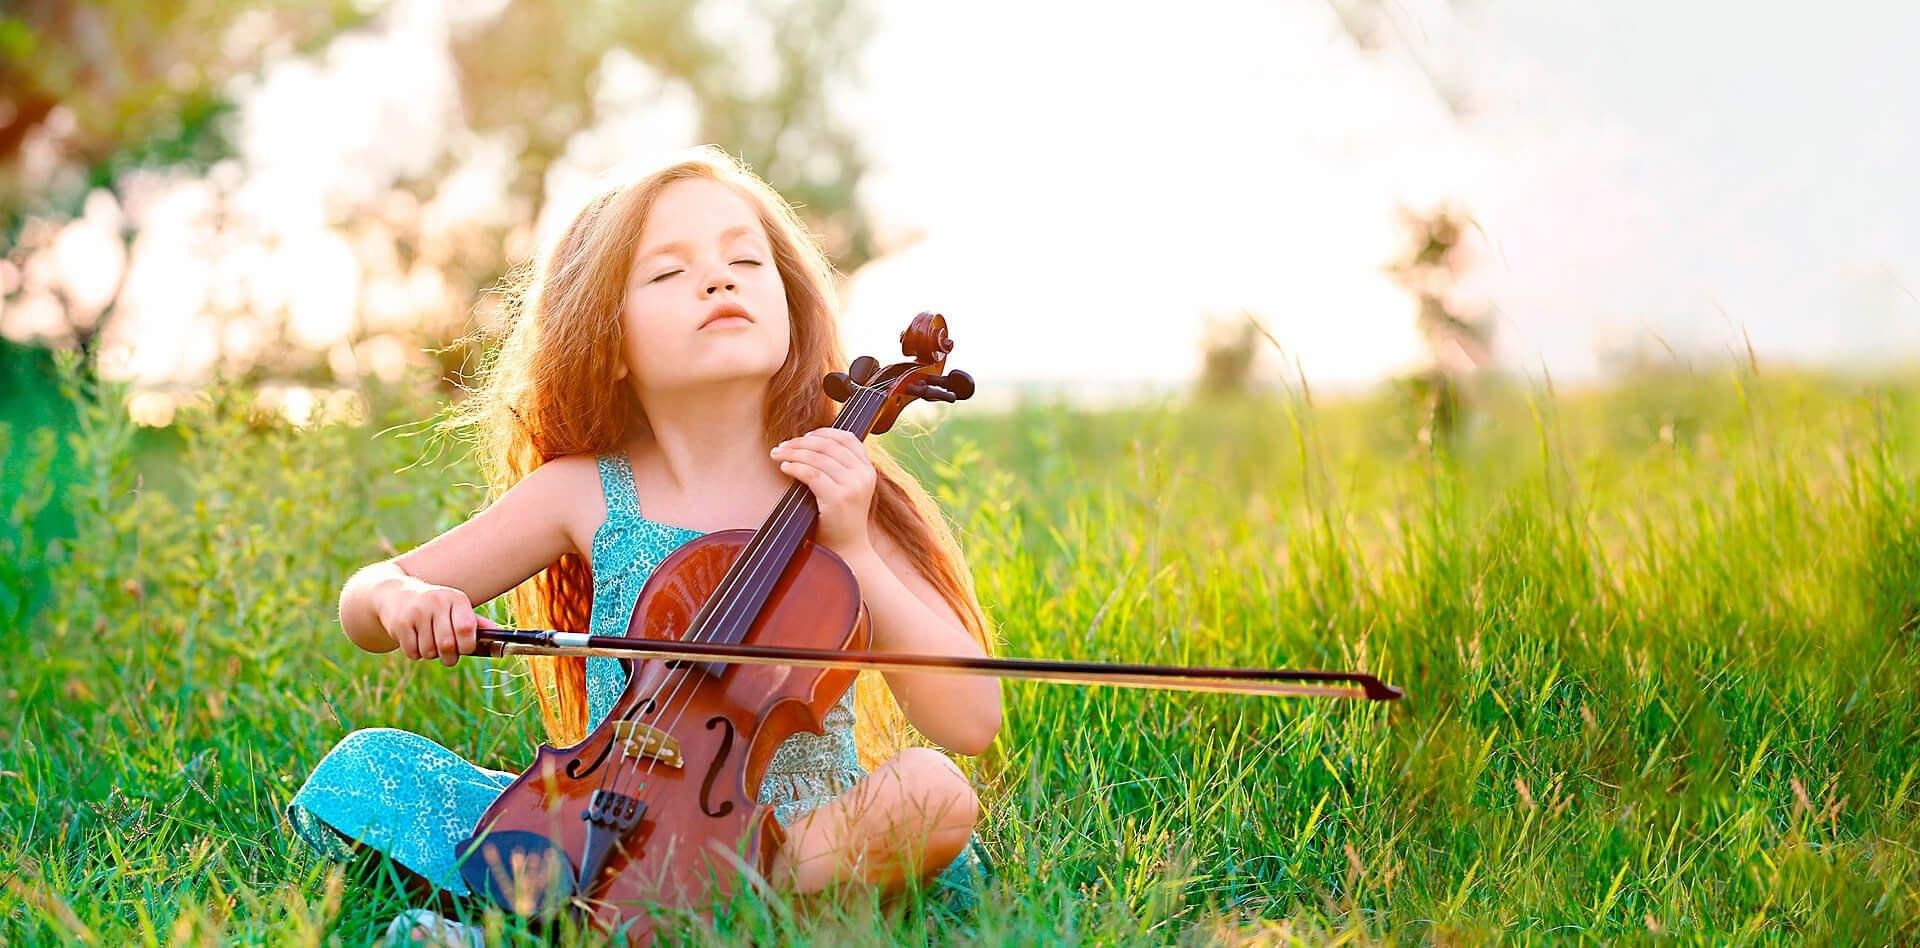 Мальчик искал скрипку. Скрипка для детей. Девочка со скрипкой. Скрипка на природе. Ребенок играет на скрипке.